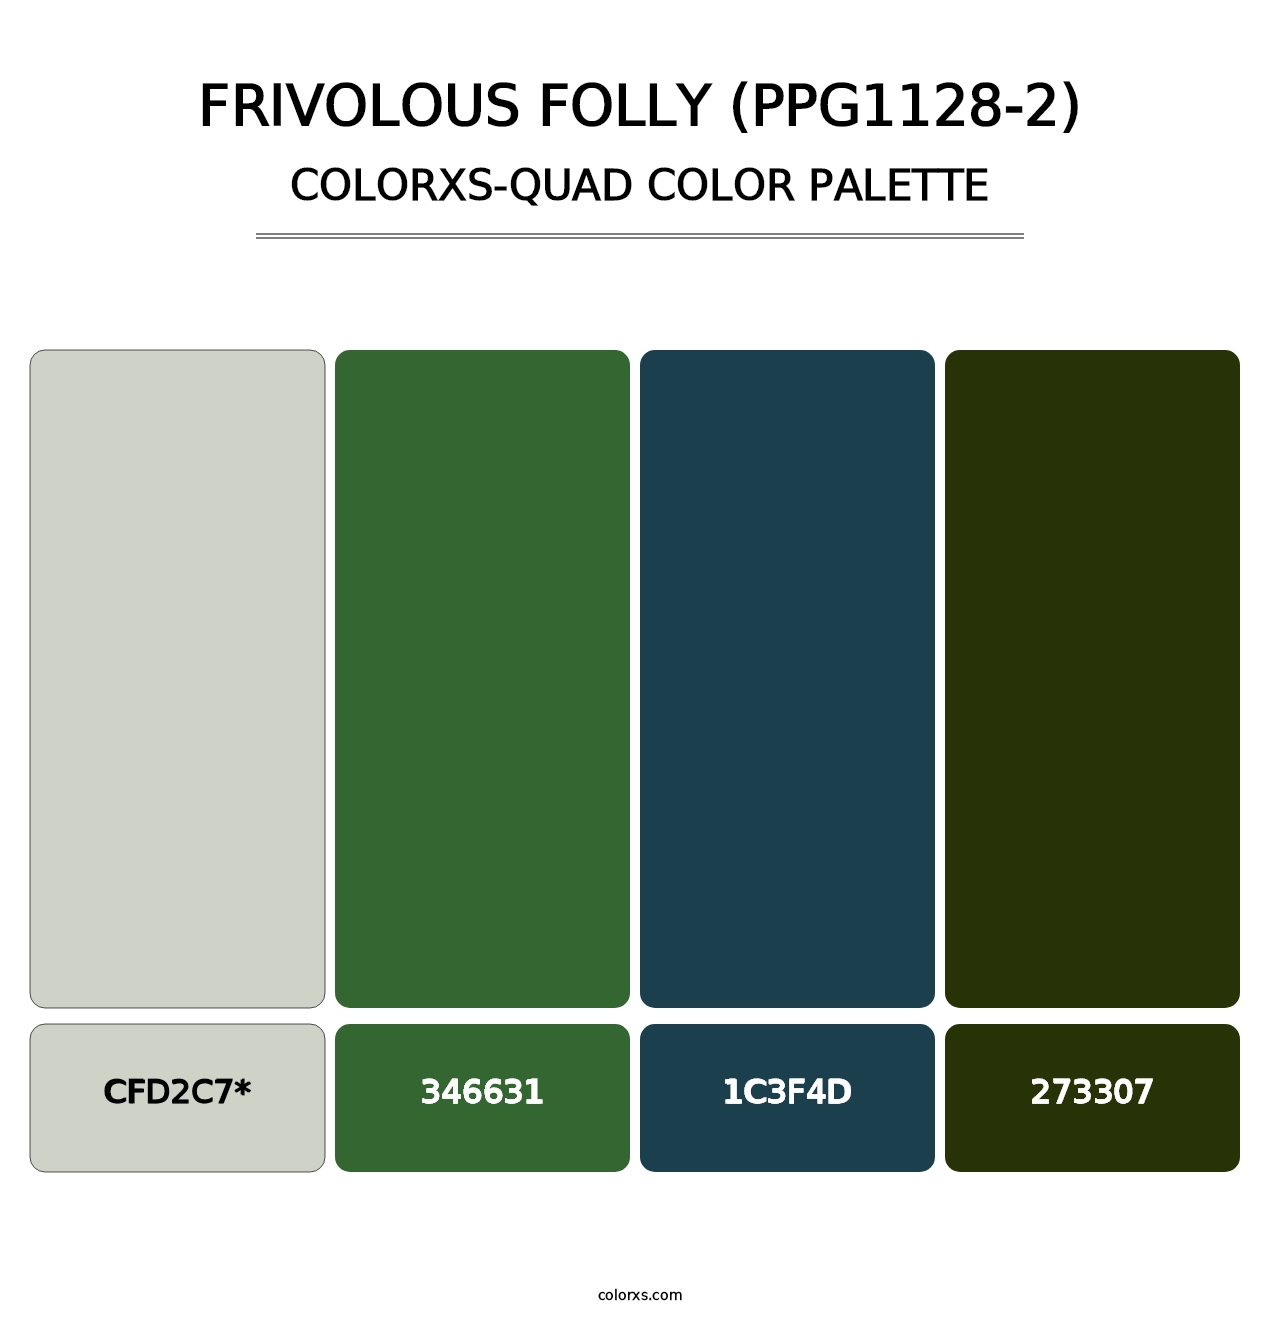 Frivolous Folly (PPG1128-2) - Colorxs Quad Palette